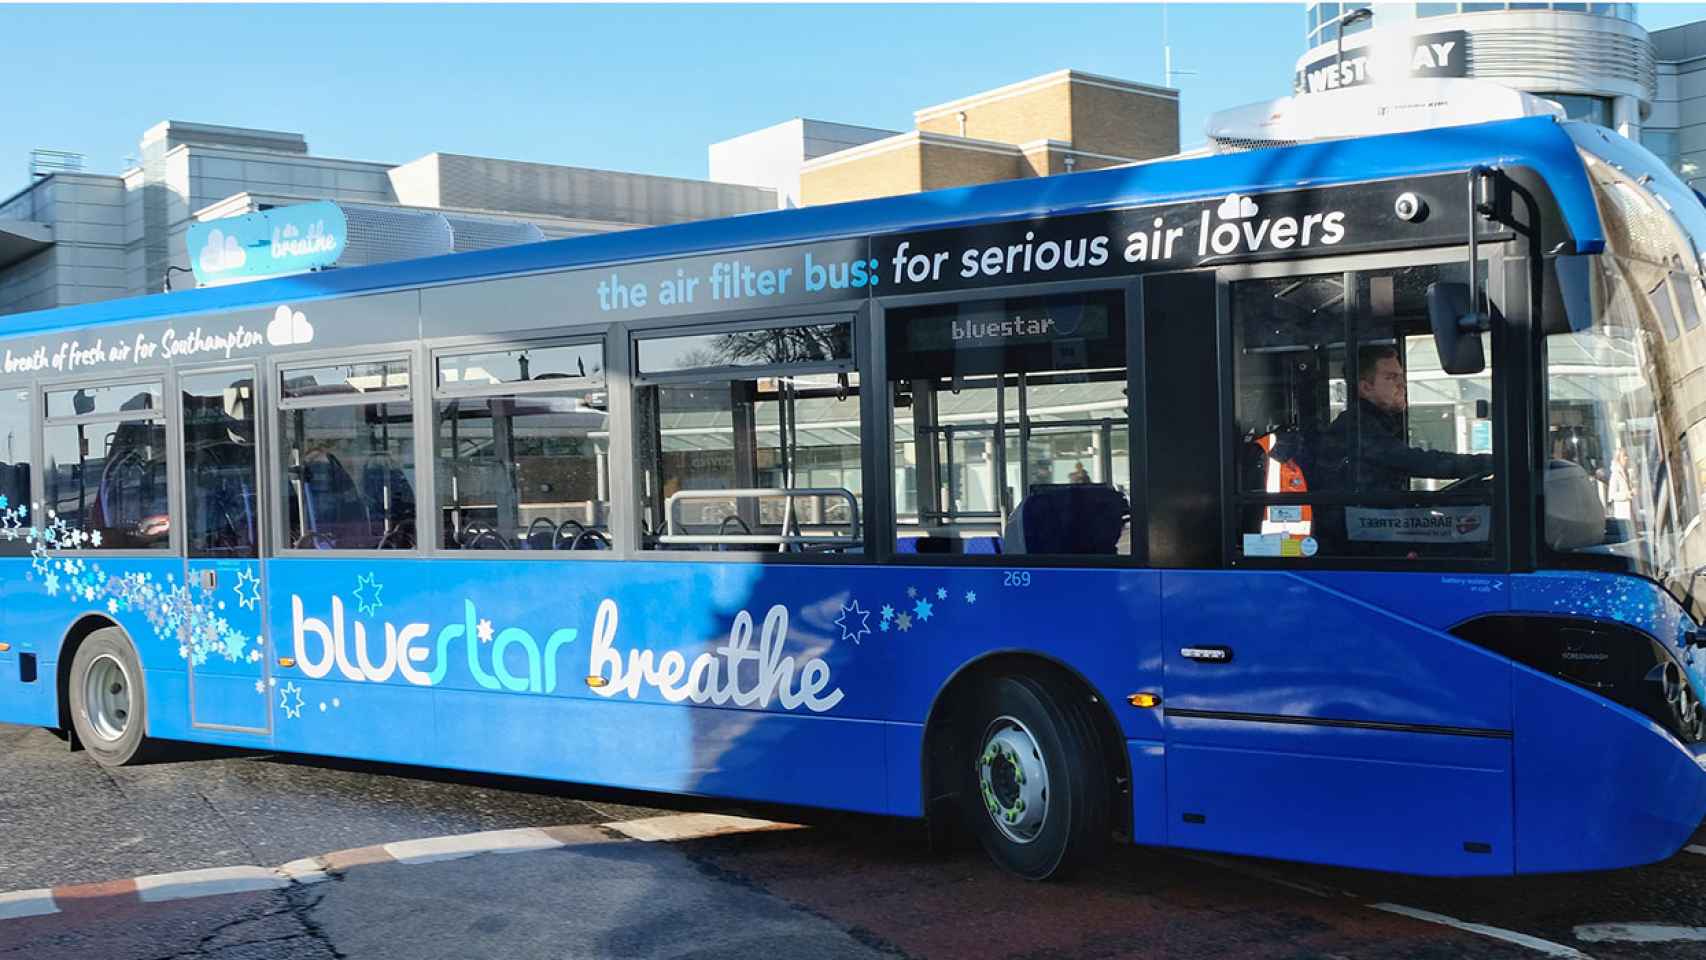 Uno de los autobuses de Go-Ahead que limpia el aire de contaminación mientras circula.